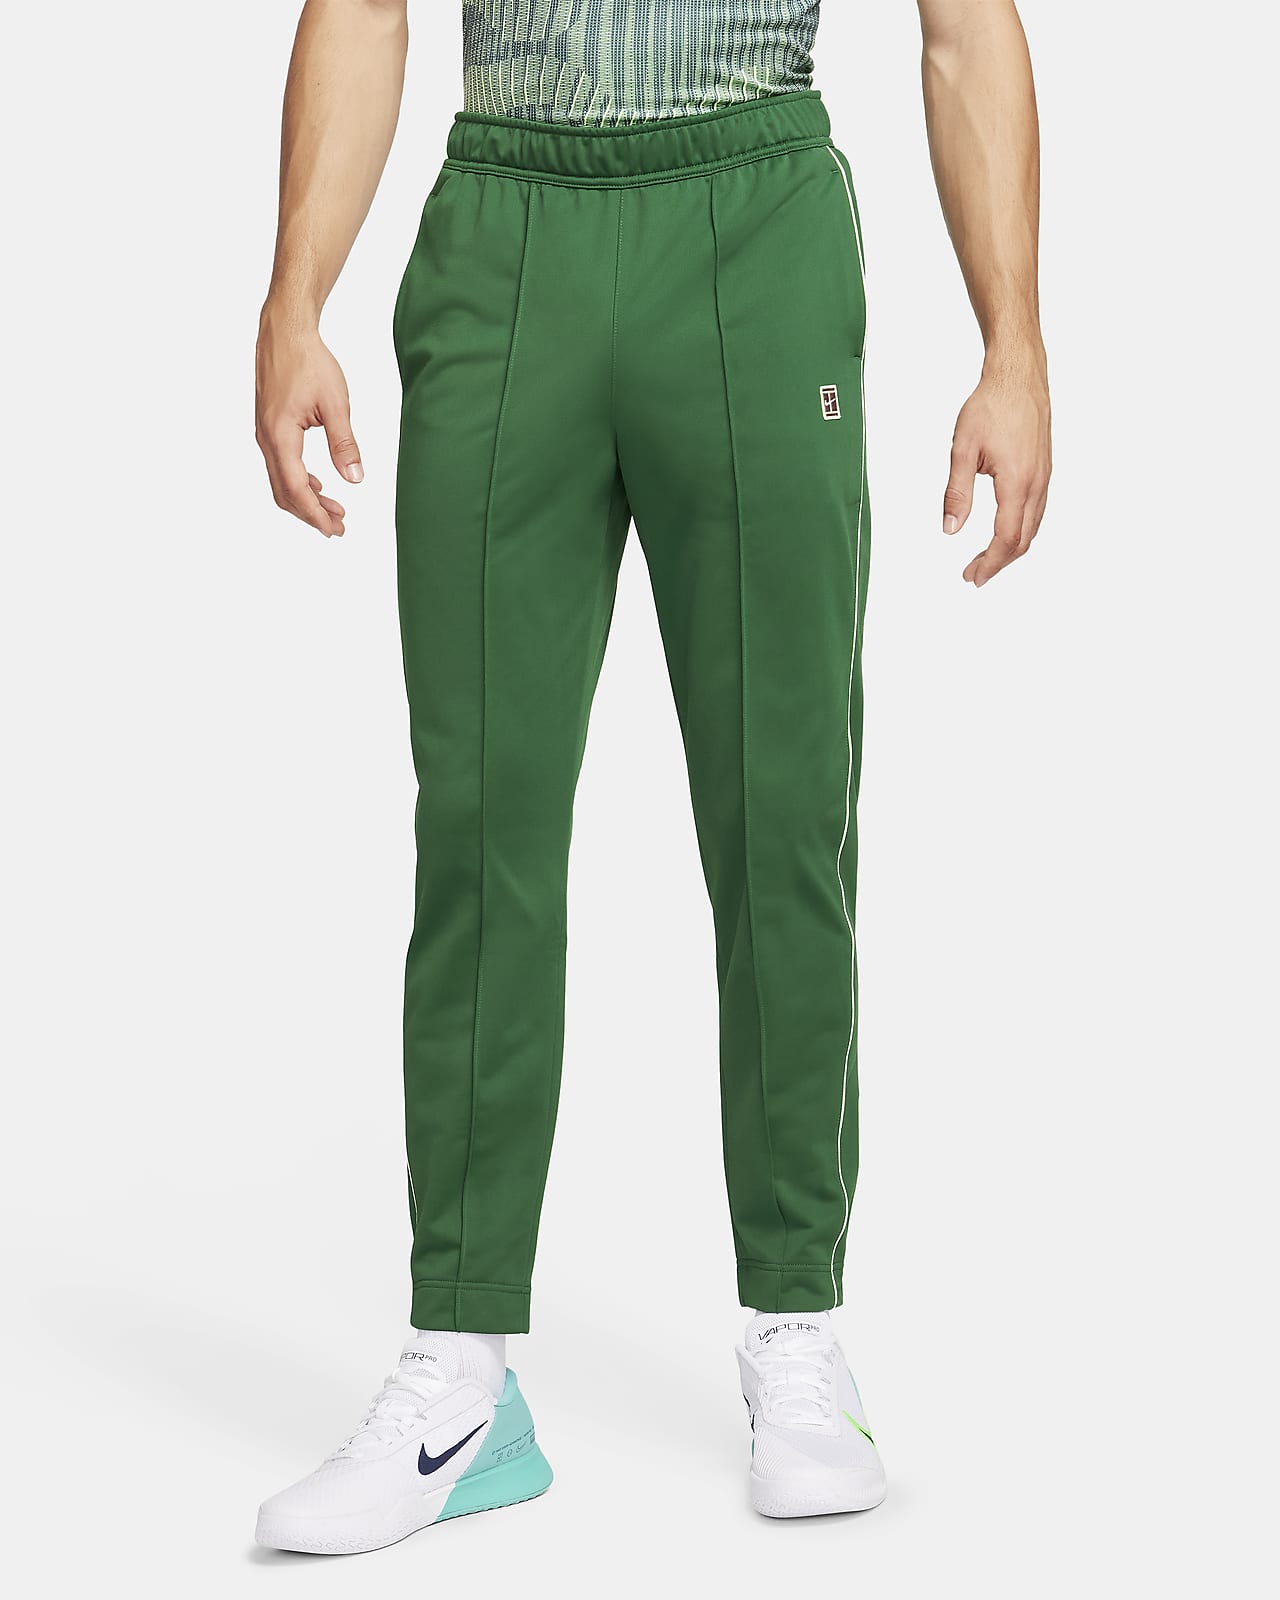 NikeCourt Pantalón de tenis - Hombre